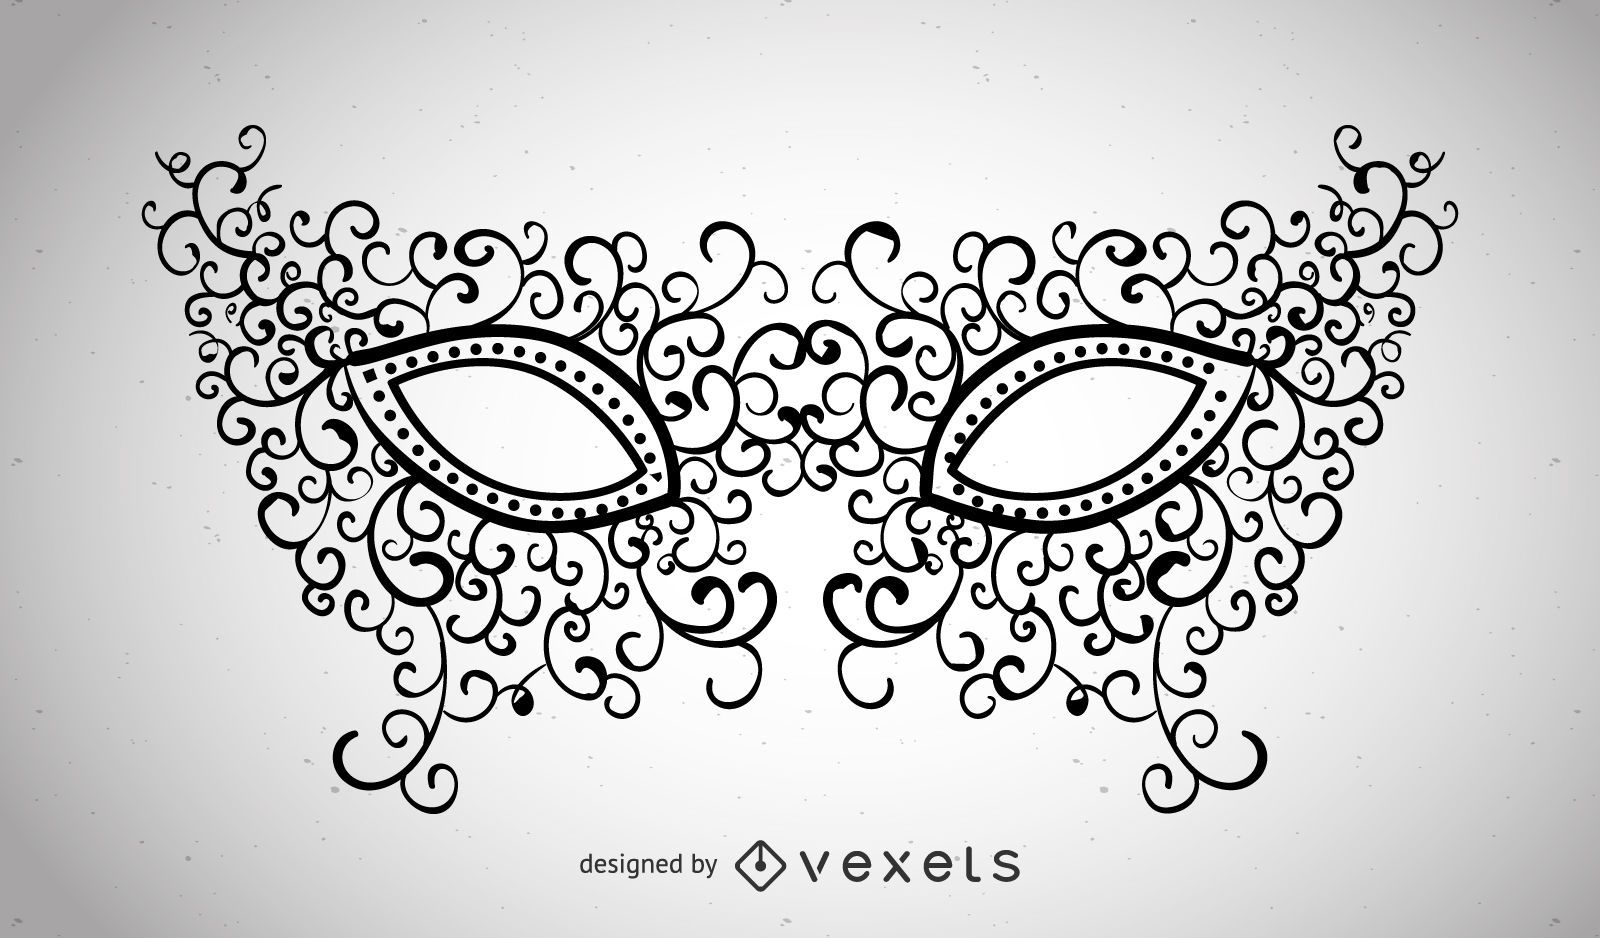 Máscara de carnaval ilustrada con remolinos.